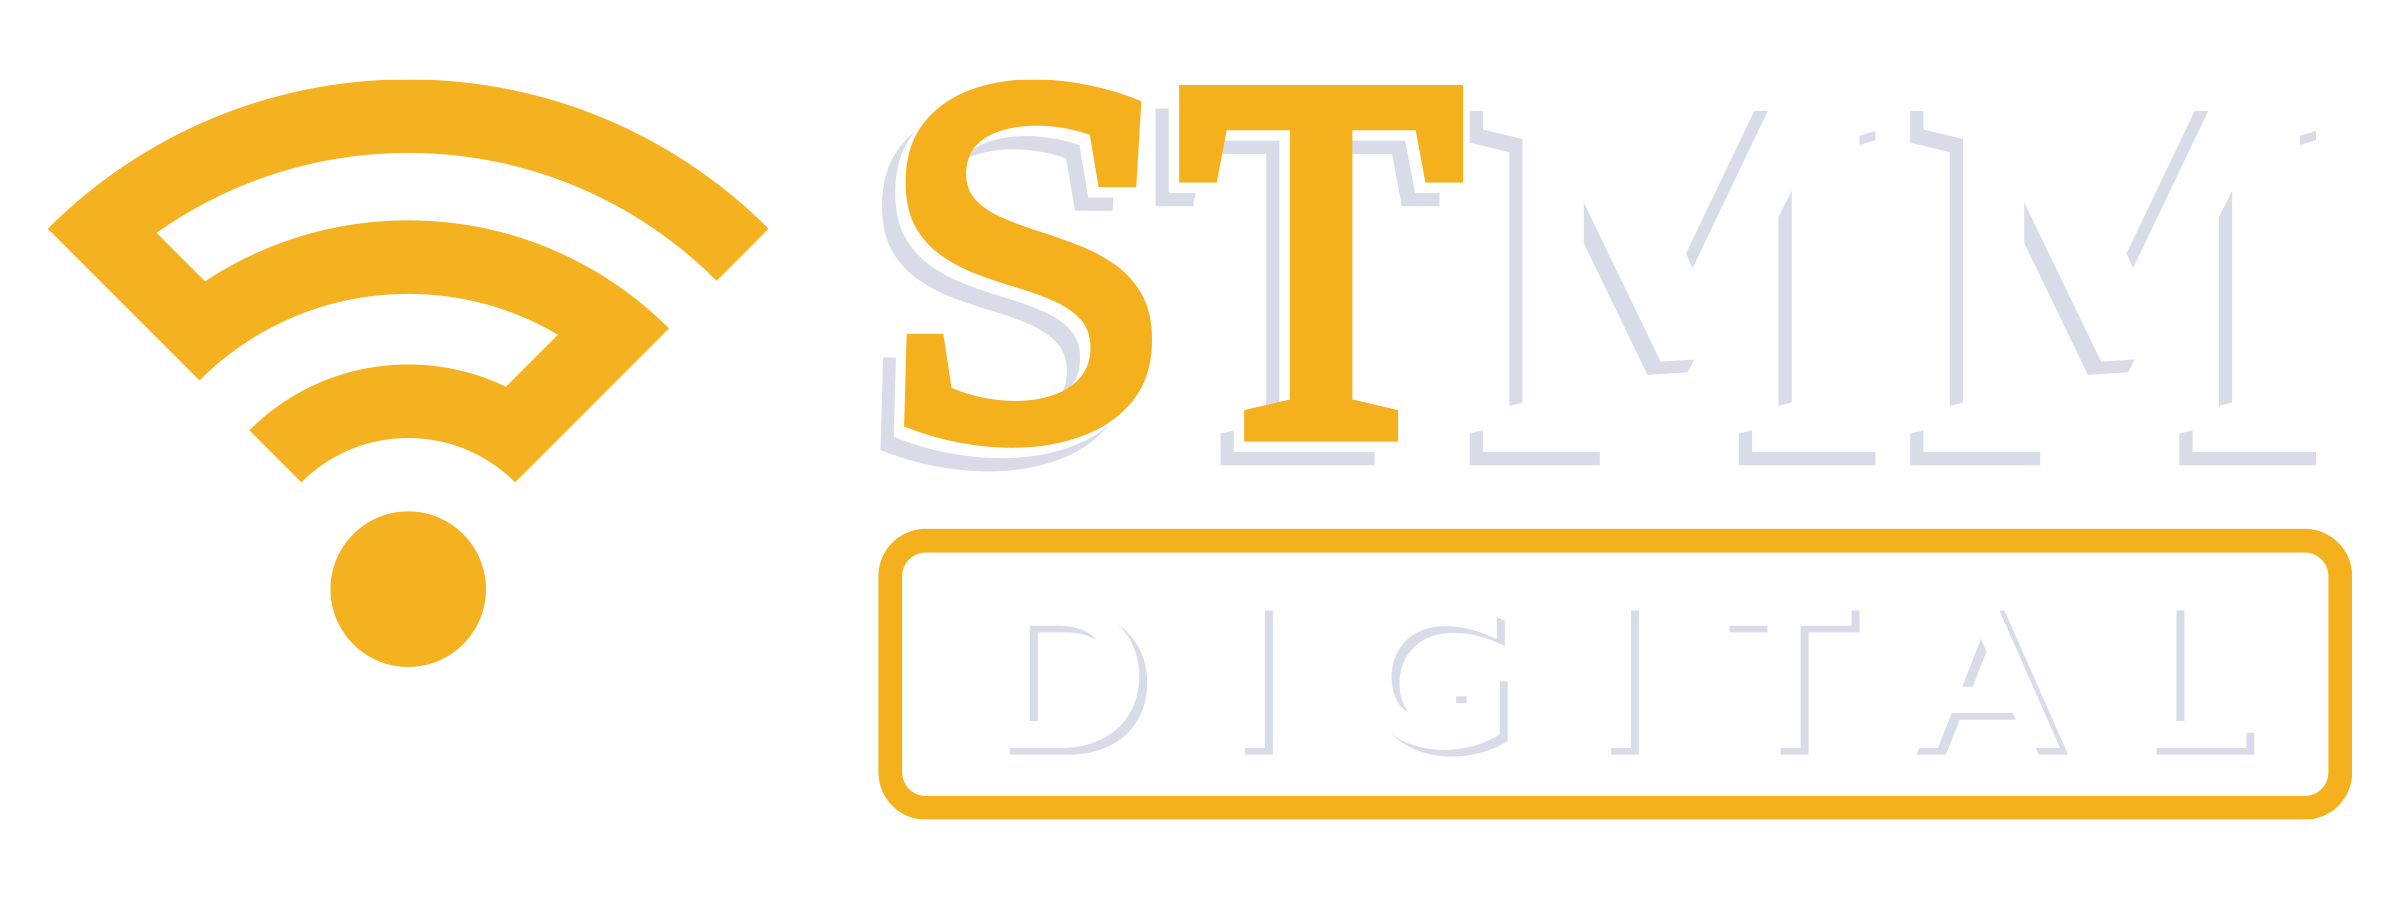 STMM Digital in Mississippi